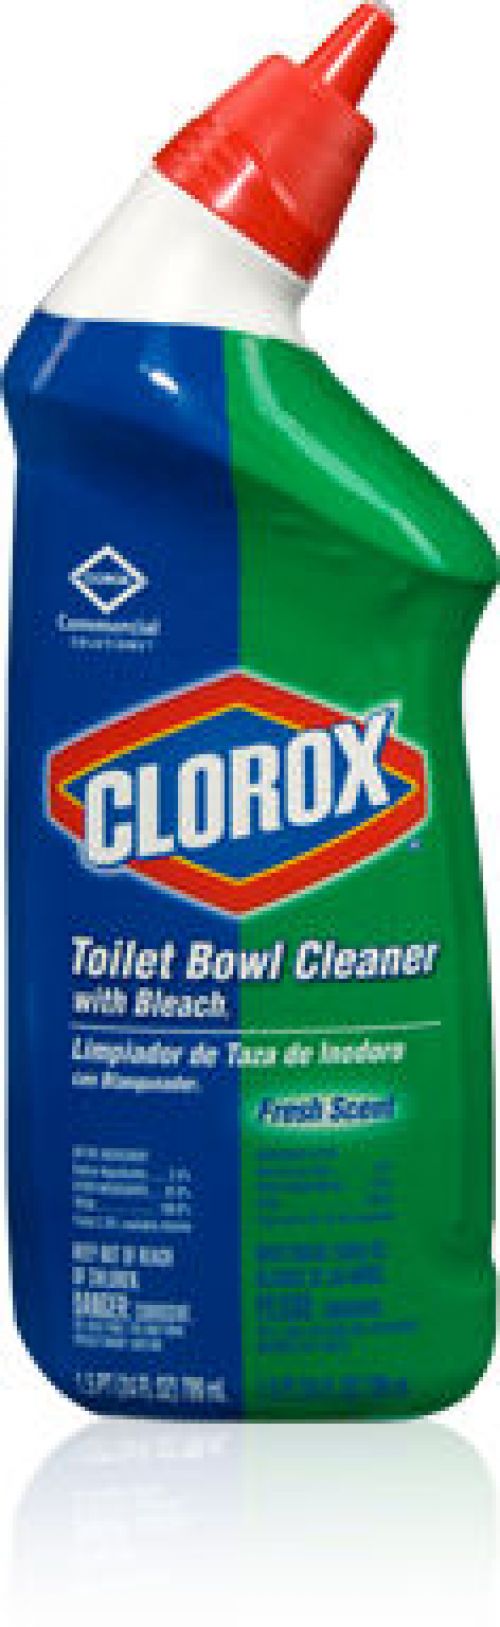 Toilet Bowl Cleaner, Clorox W/Bleach, 12/24oz